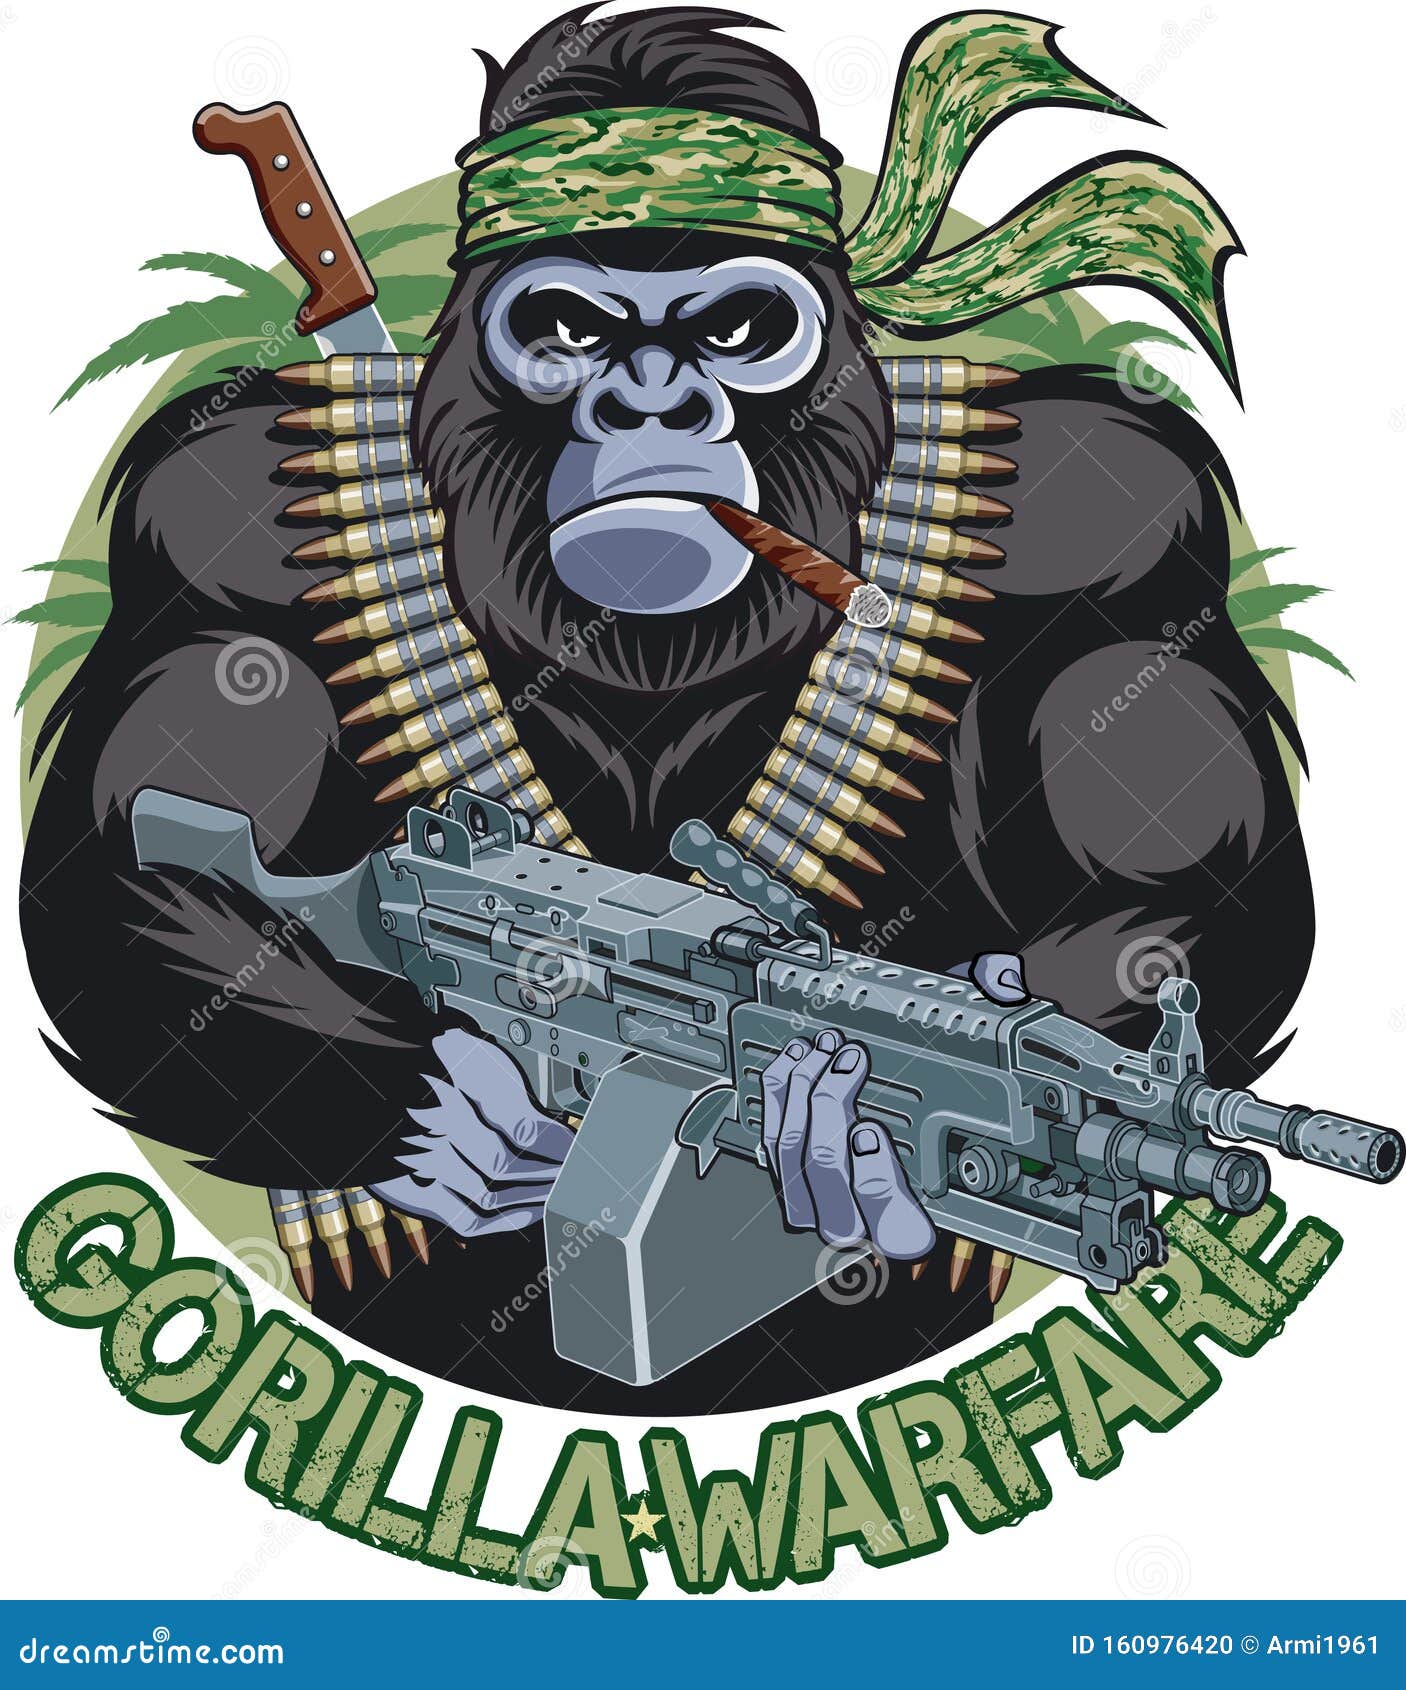 gorilla with bandana, cigar, holding machine gun and  text gorilla warfare